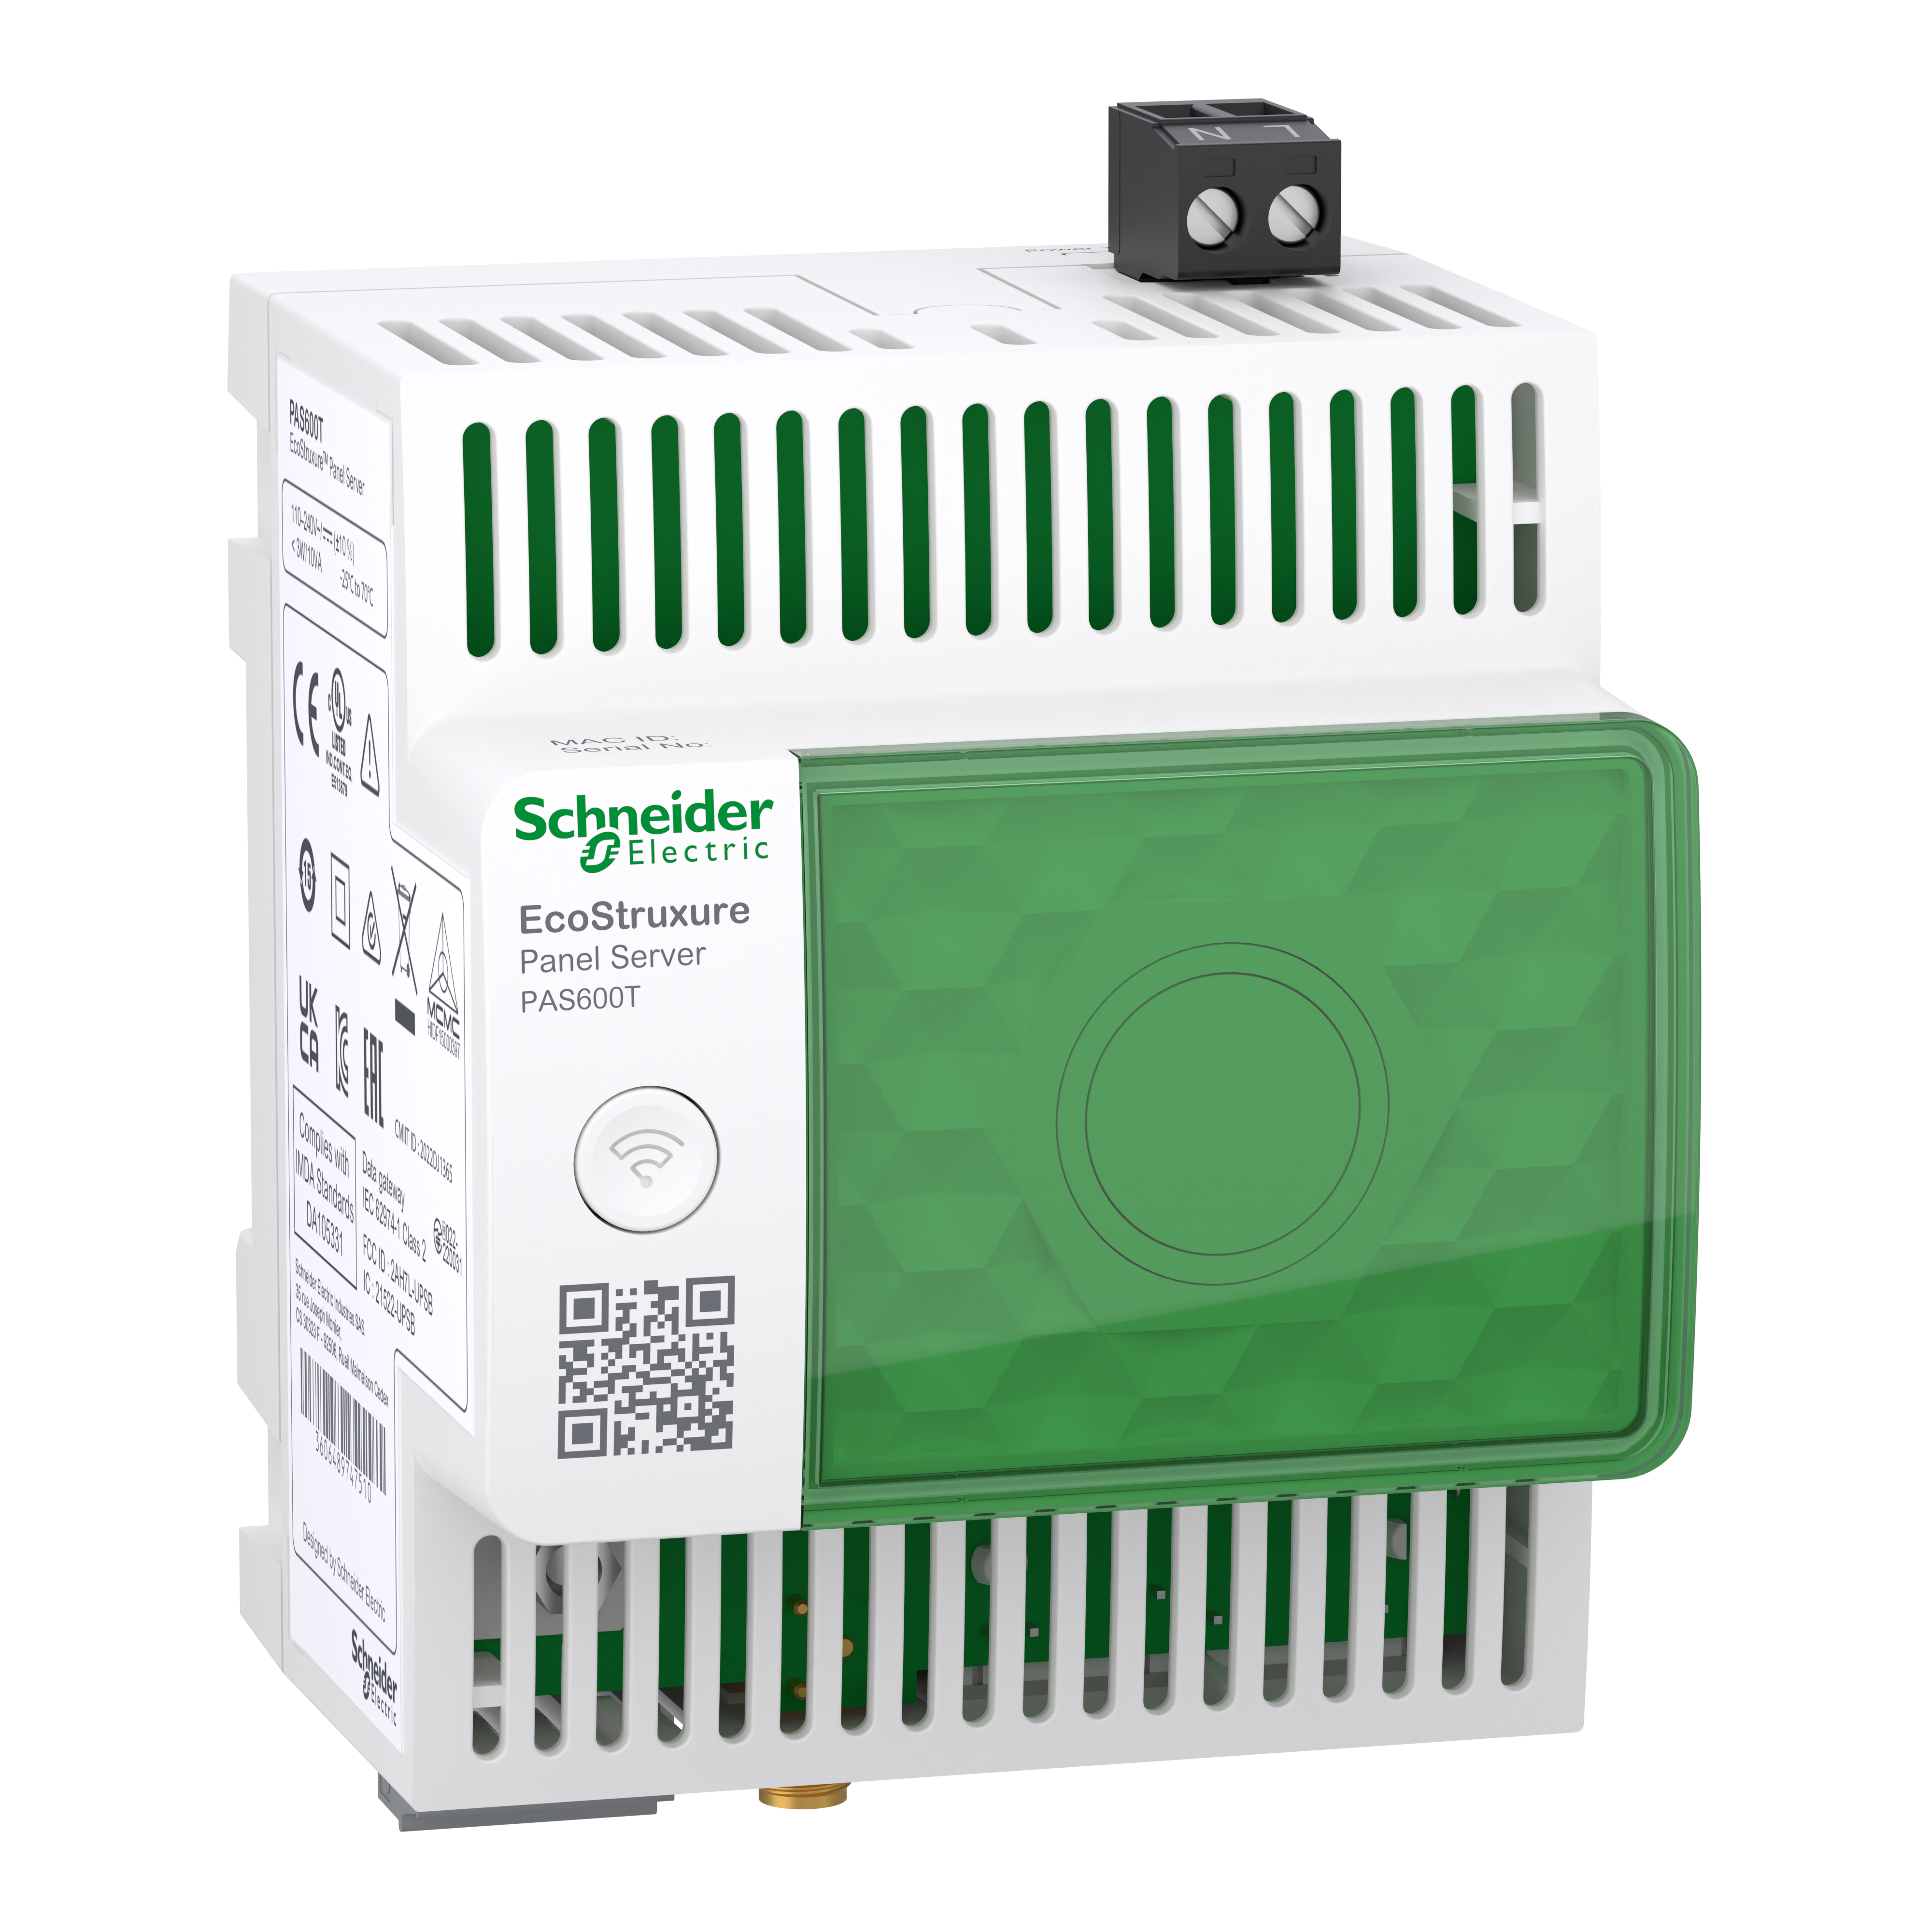 EcoStruxure: Panel Server Ethernet Gateway, univerzalni bežični koncentrator sa funkcijama Web stranice, 110-240VAC/DC